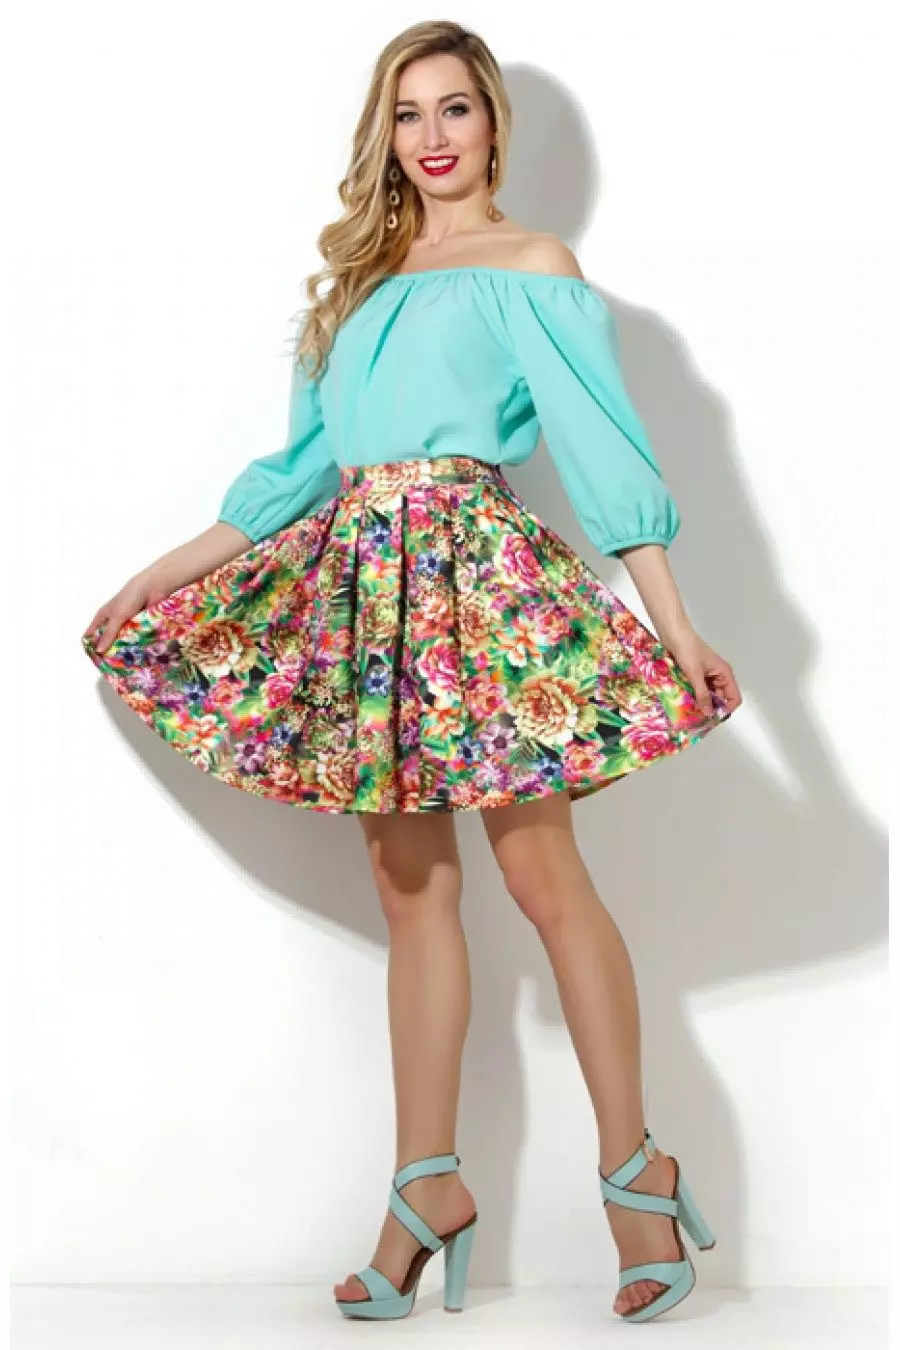 Skirt on რეზინის band ერთად ყვავილების ბეჭდვითი